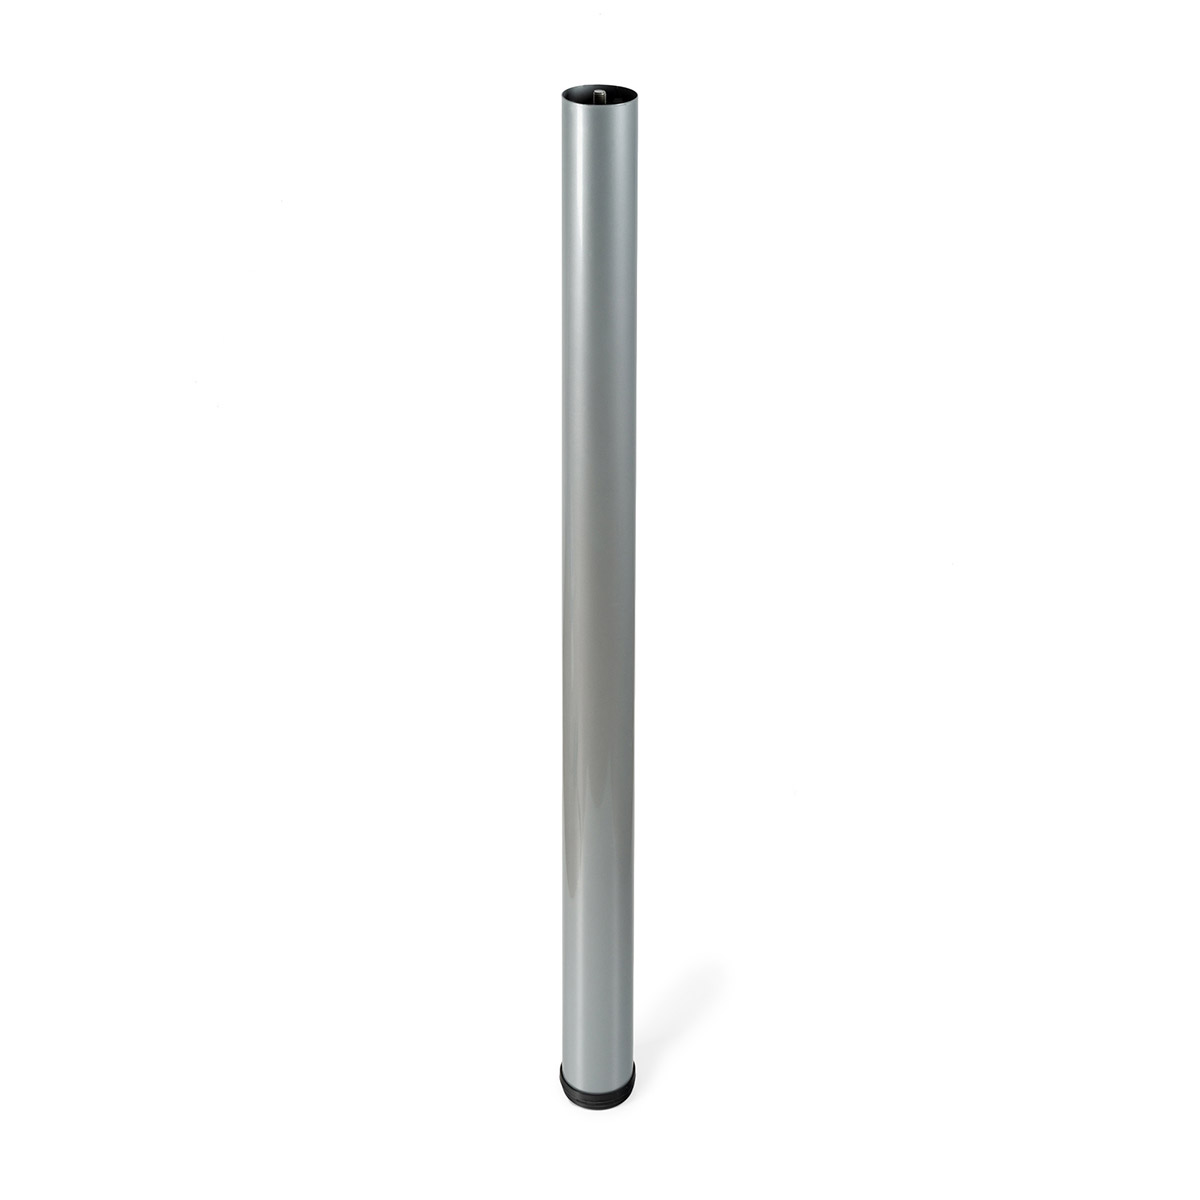 Jeu de 4 pieds cylindriques réglables en acier d'une hauteur de 700 mm et finition aluminium. Dimensions: 60x60x710 mm